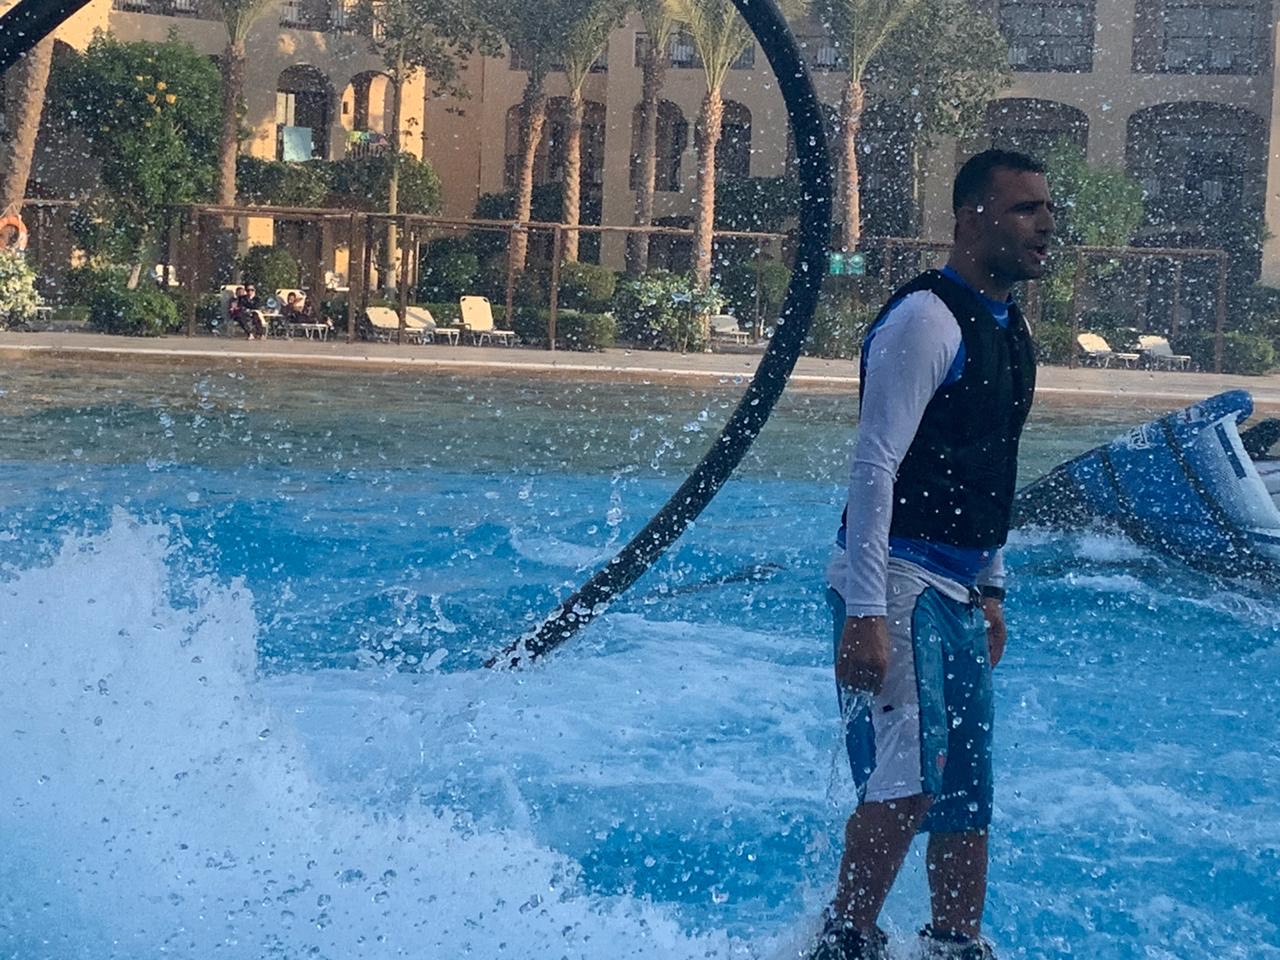 مجدى عبد الغنى خلال أدائه لعبة الــ فلاى بورد  أشهر الألعاب المائية بفنادق البحر الأحمر وأمتعها (2)